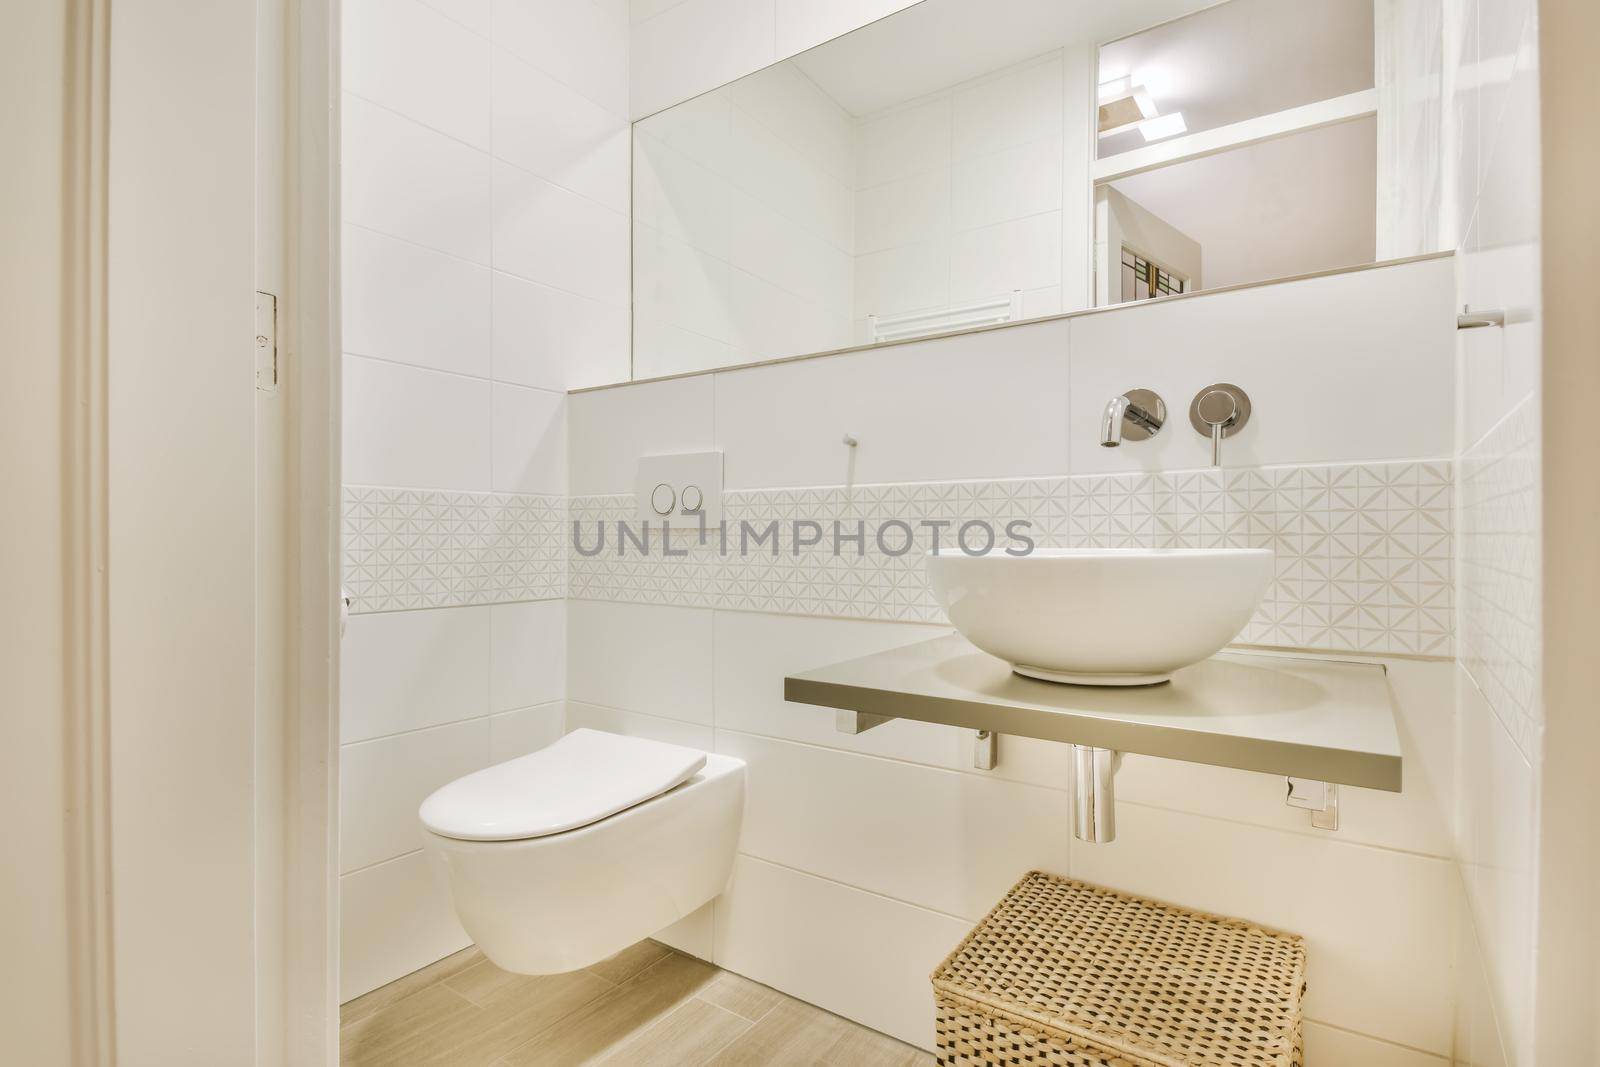 Design of elegant restroom in luxury apartment